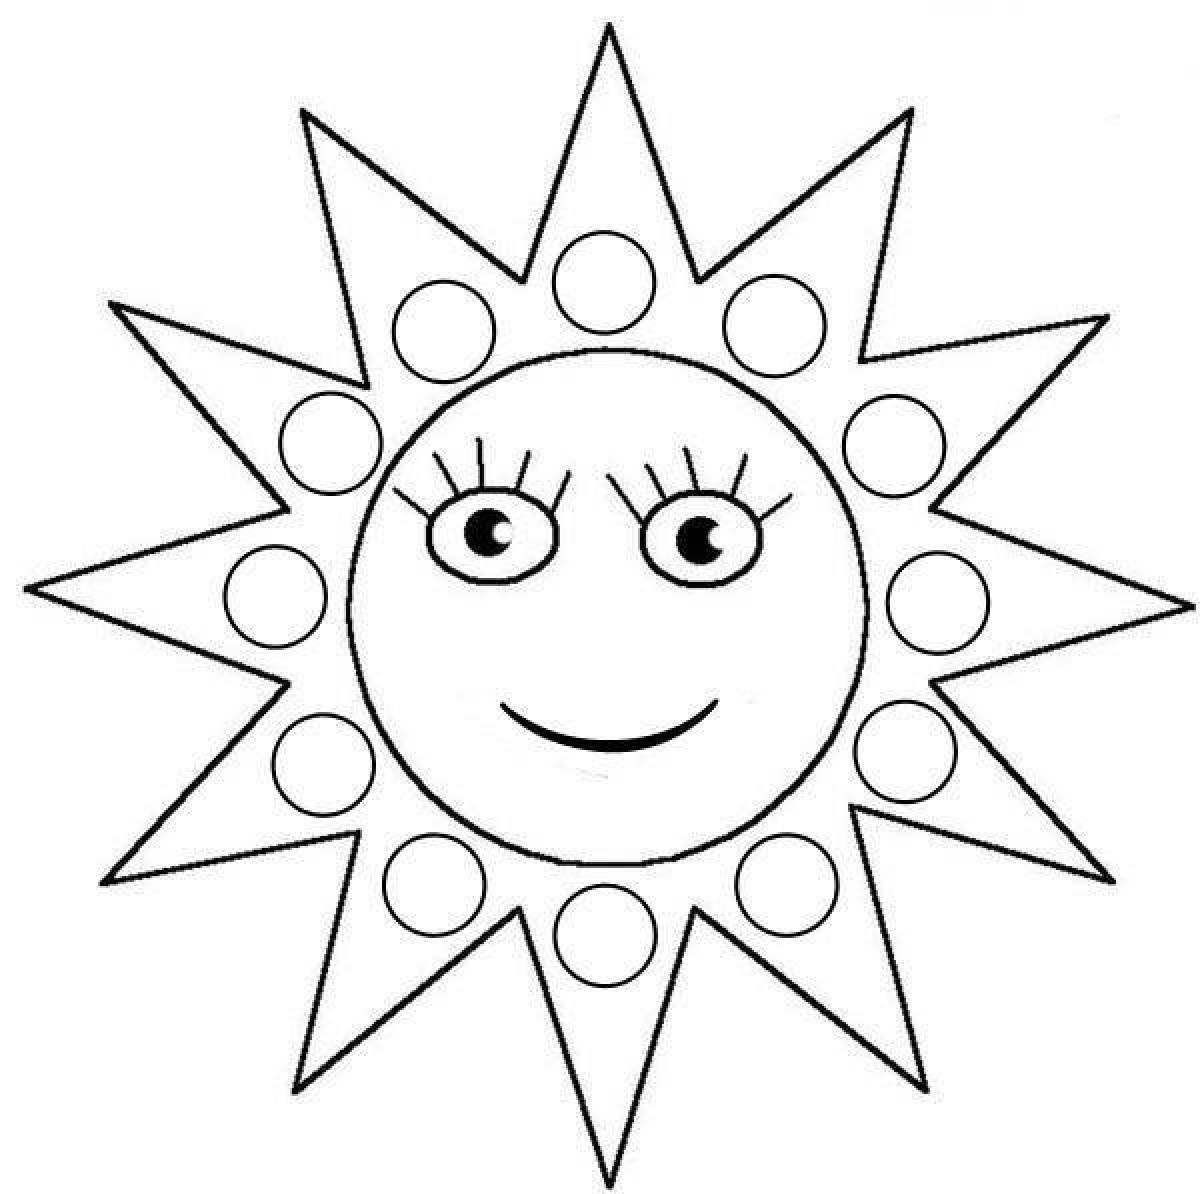 Лицо масленицы раскраска. Раскраска. Солнышко. Солнце раскраска. Солнышко раскраска для детей. Солнце трафарет для детей.